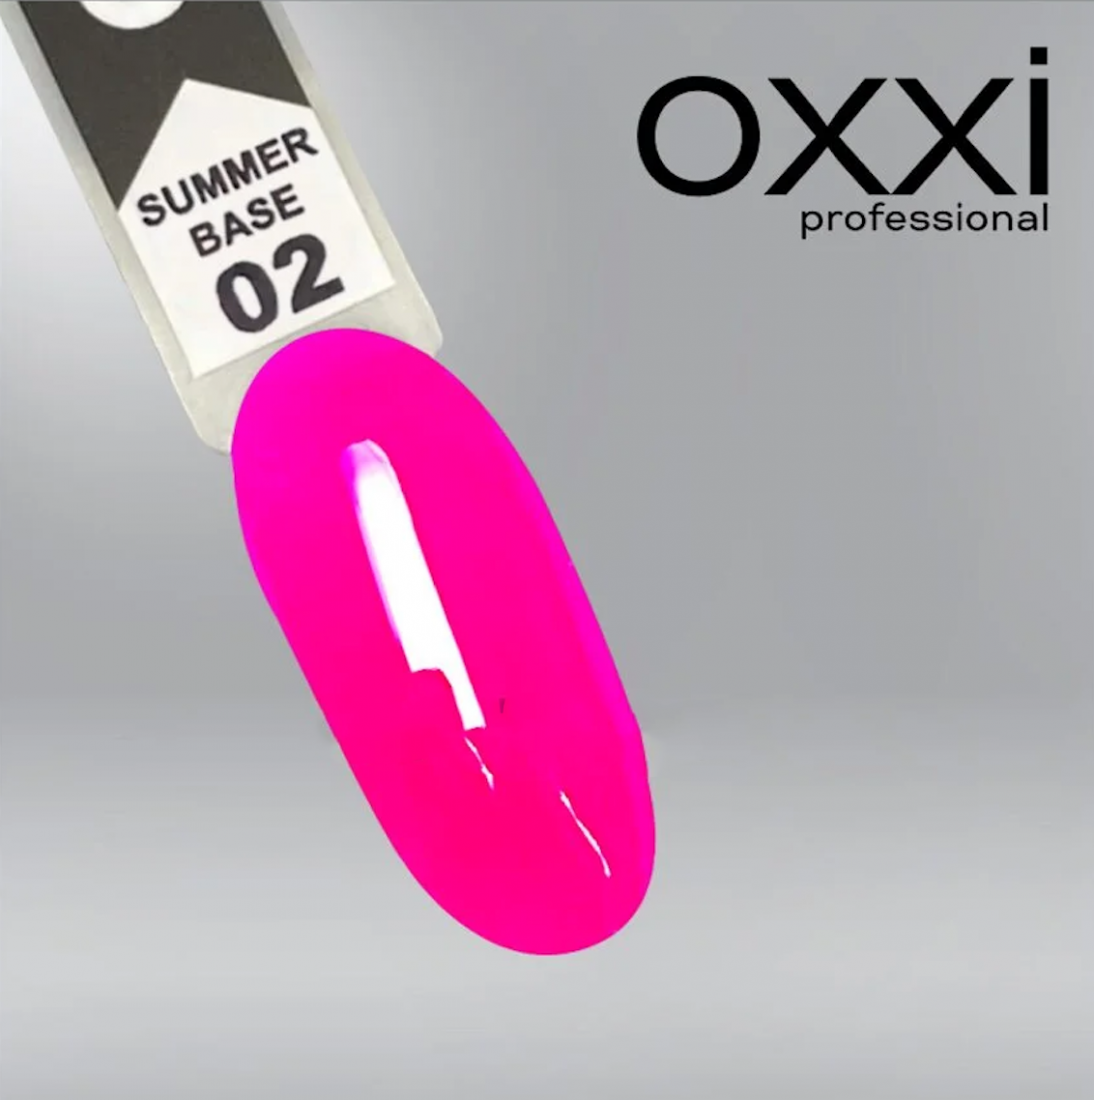 Камуфлирующая цветная база для гель-лака Oxxi Professional Summer Base 2, малиновая, 10мл